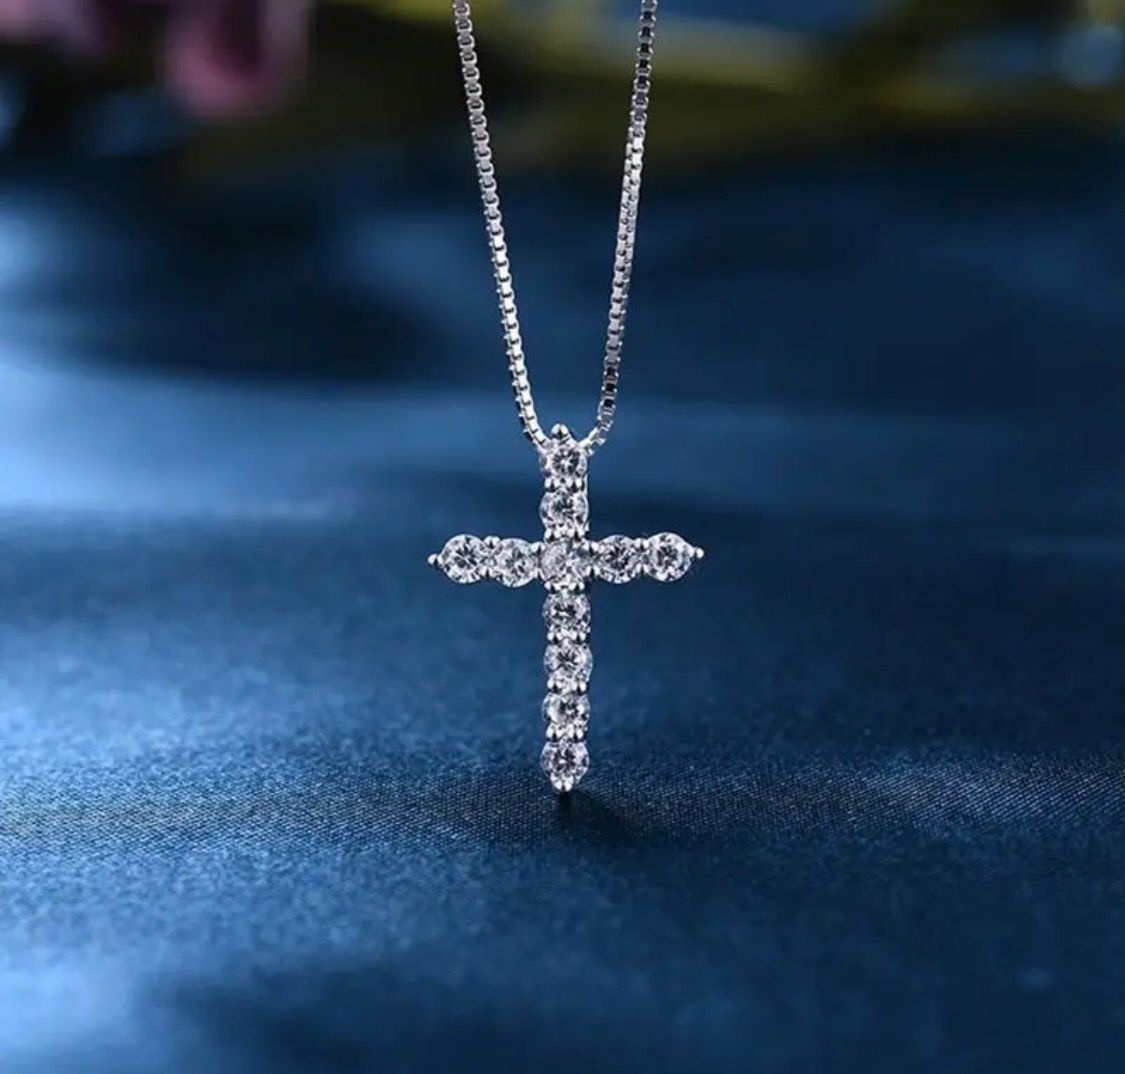 Кулон серебряный "Крест со стразами"  размер 20*30мм (средний), на цепочке (длина 46 см), в специальном подарочном мешочке